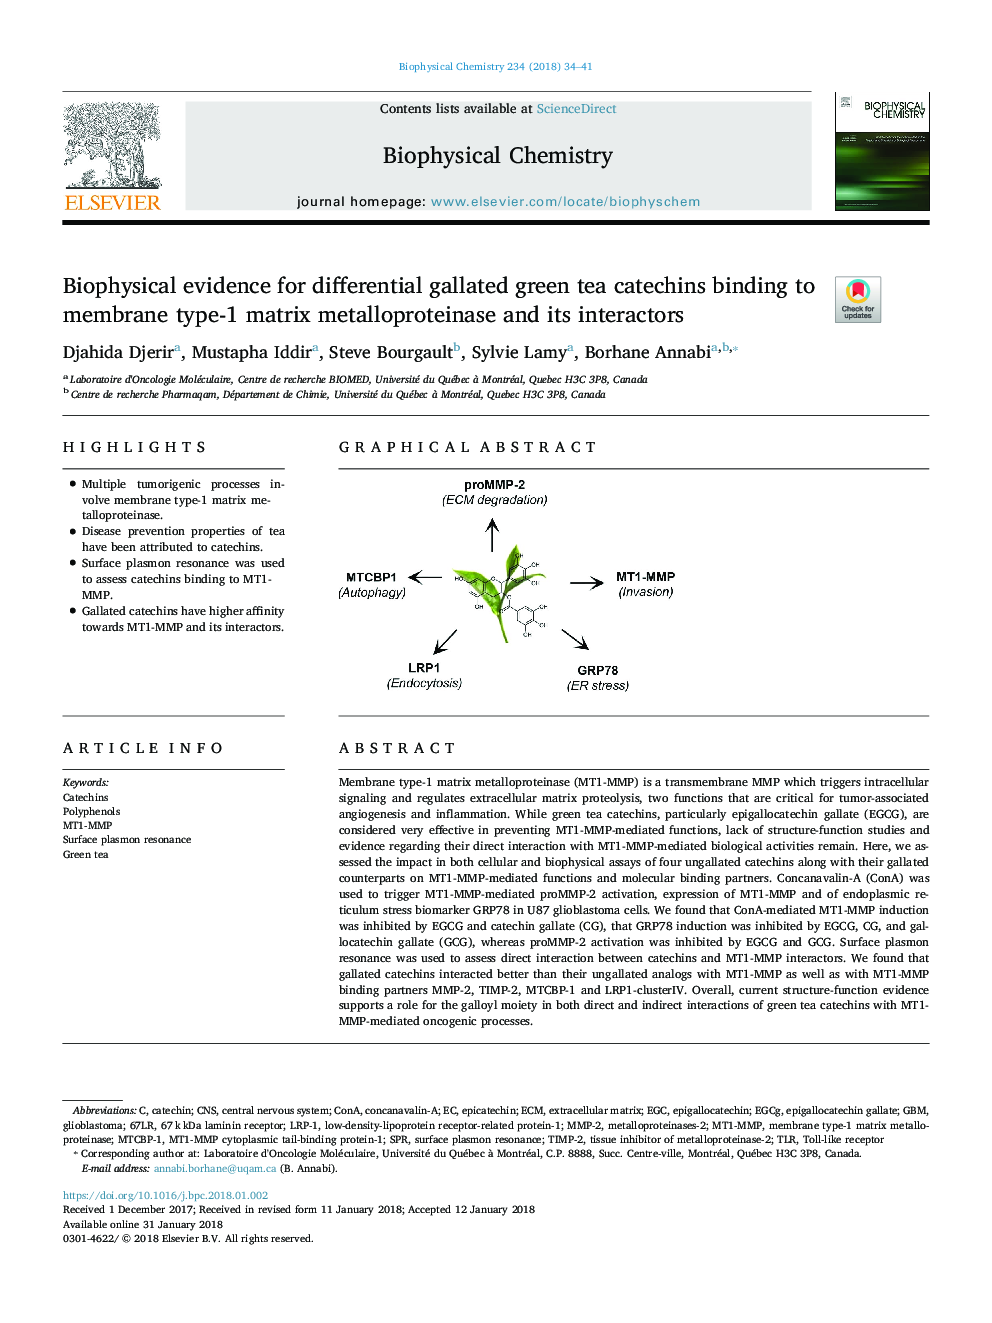 شواهد بیوفیزیکی برای کاکتیشین چای سبز دیابتی گالاته اتصال به متالوپروتئیناز ماتریکس نوع 1 و سازنده آن 